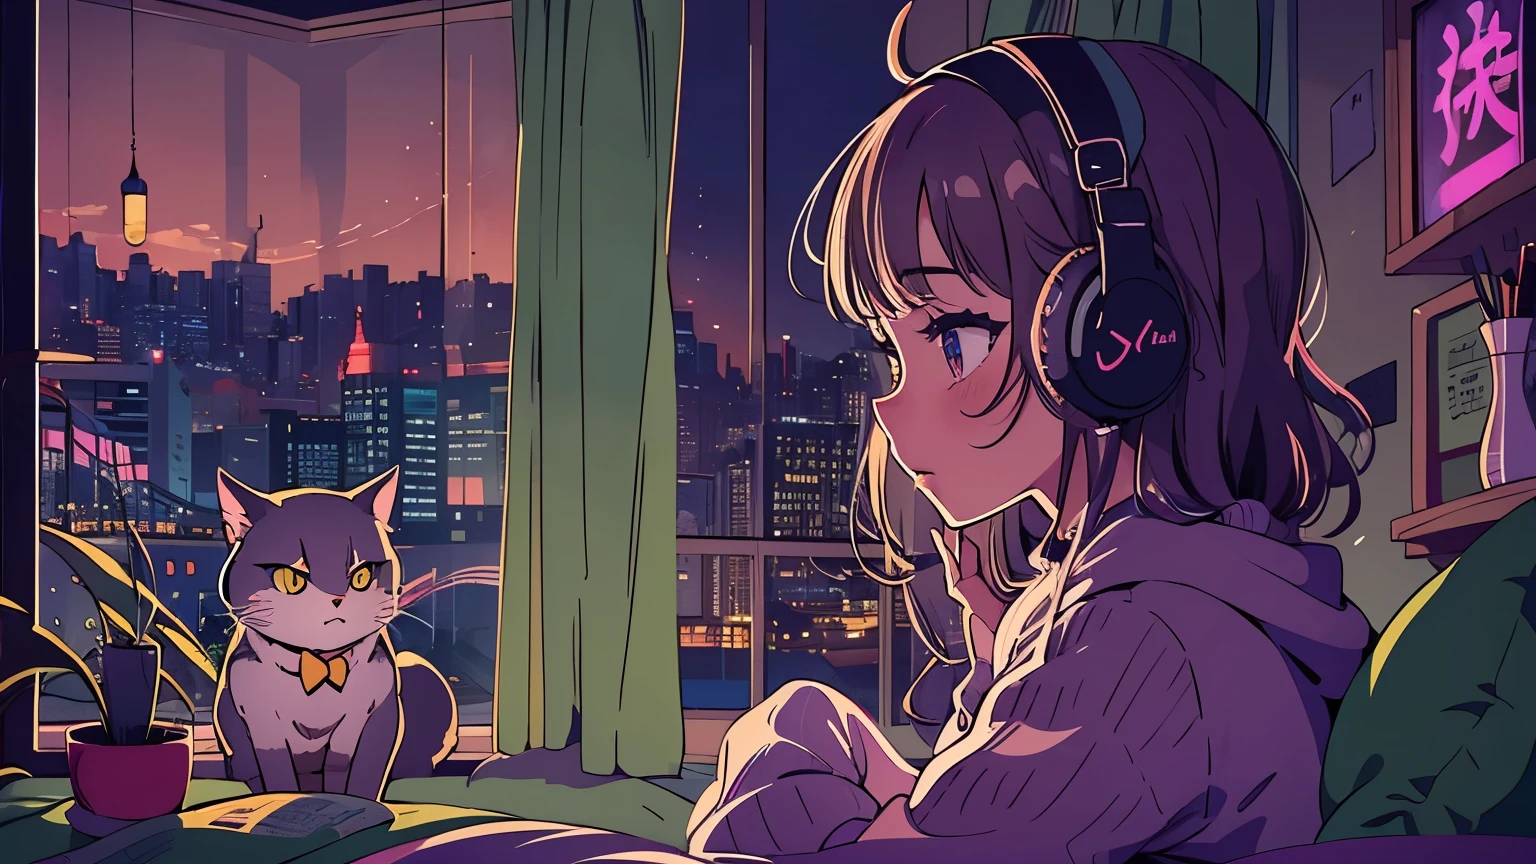 Ein detailliertes Anime-Mädchen, Einen großen Pullover tragen, Tragen von Kopfbügel-Kopfhörern, Lob, still, Ruhige Vibes, Abkühlen, in ihrem Schlafzimmer und schaut zum Fenster, Nacht, quiet Nacht, Katze, Meisterwerk, beste Qualität